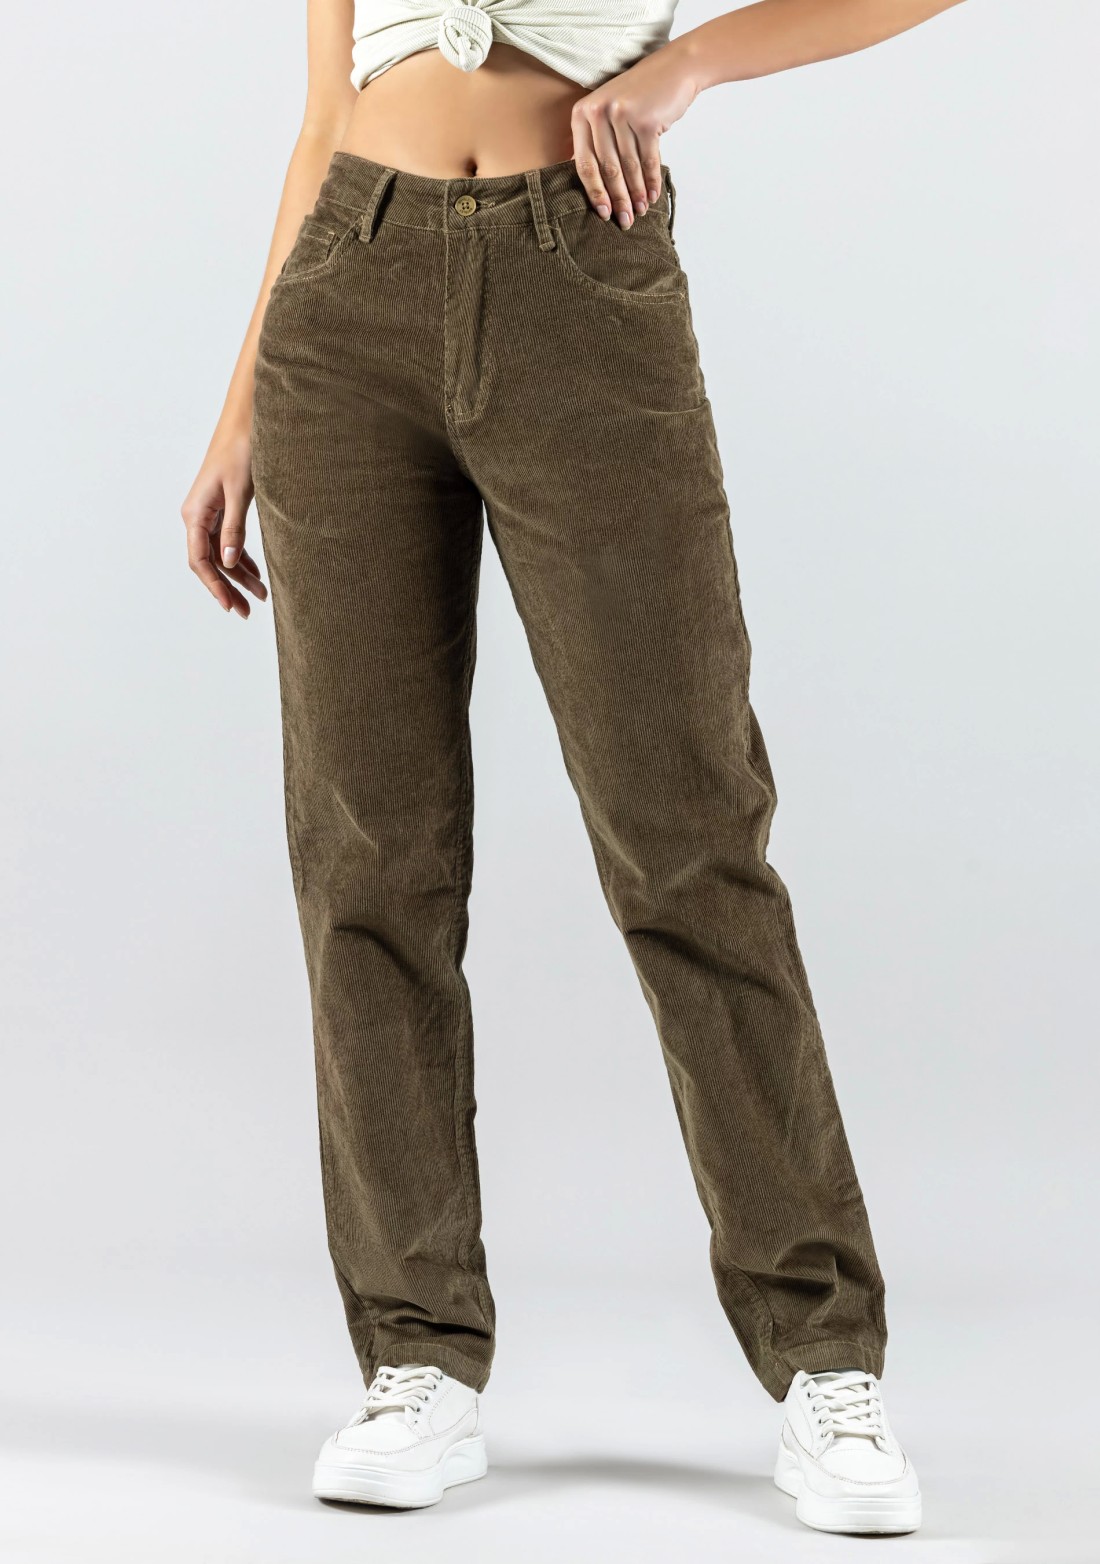 Beige Corduroy Pants Womens | Brown Corduroy Pants Women | Corduroy Pants  Wide Brown - Pants & Capris - Aliexpress